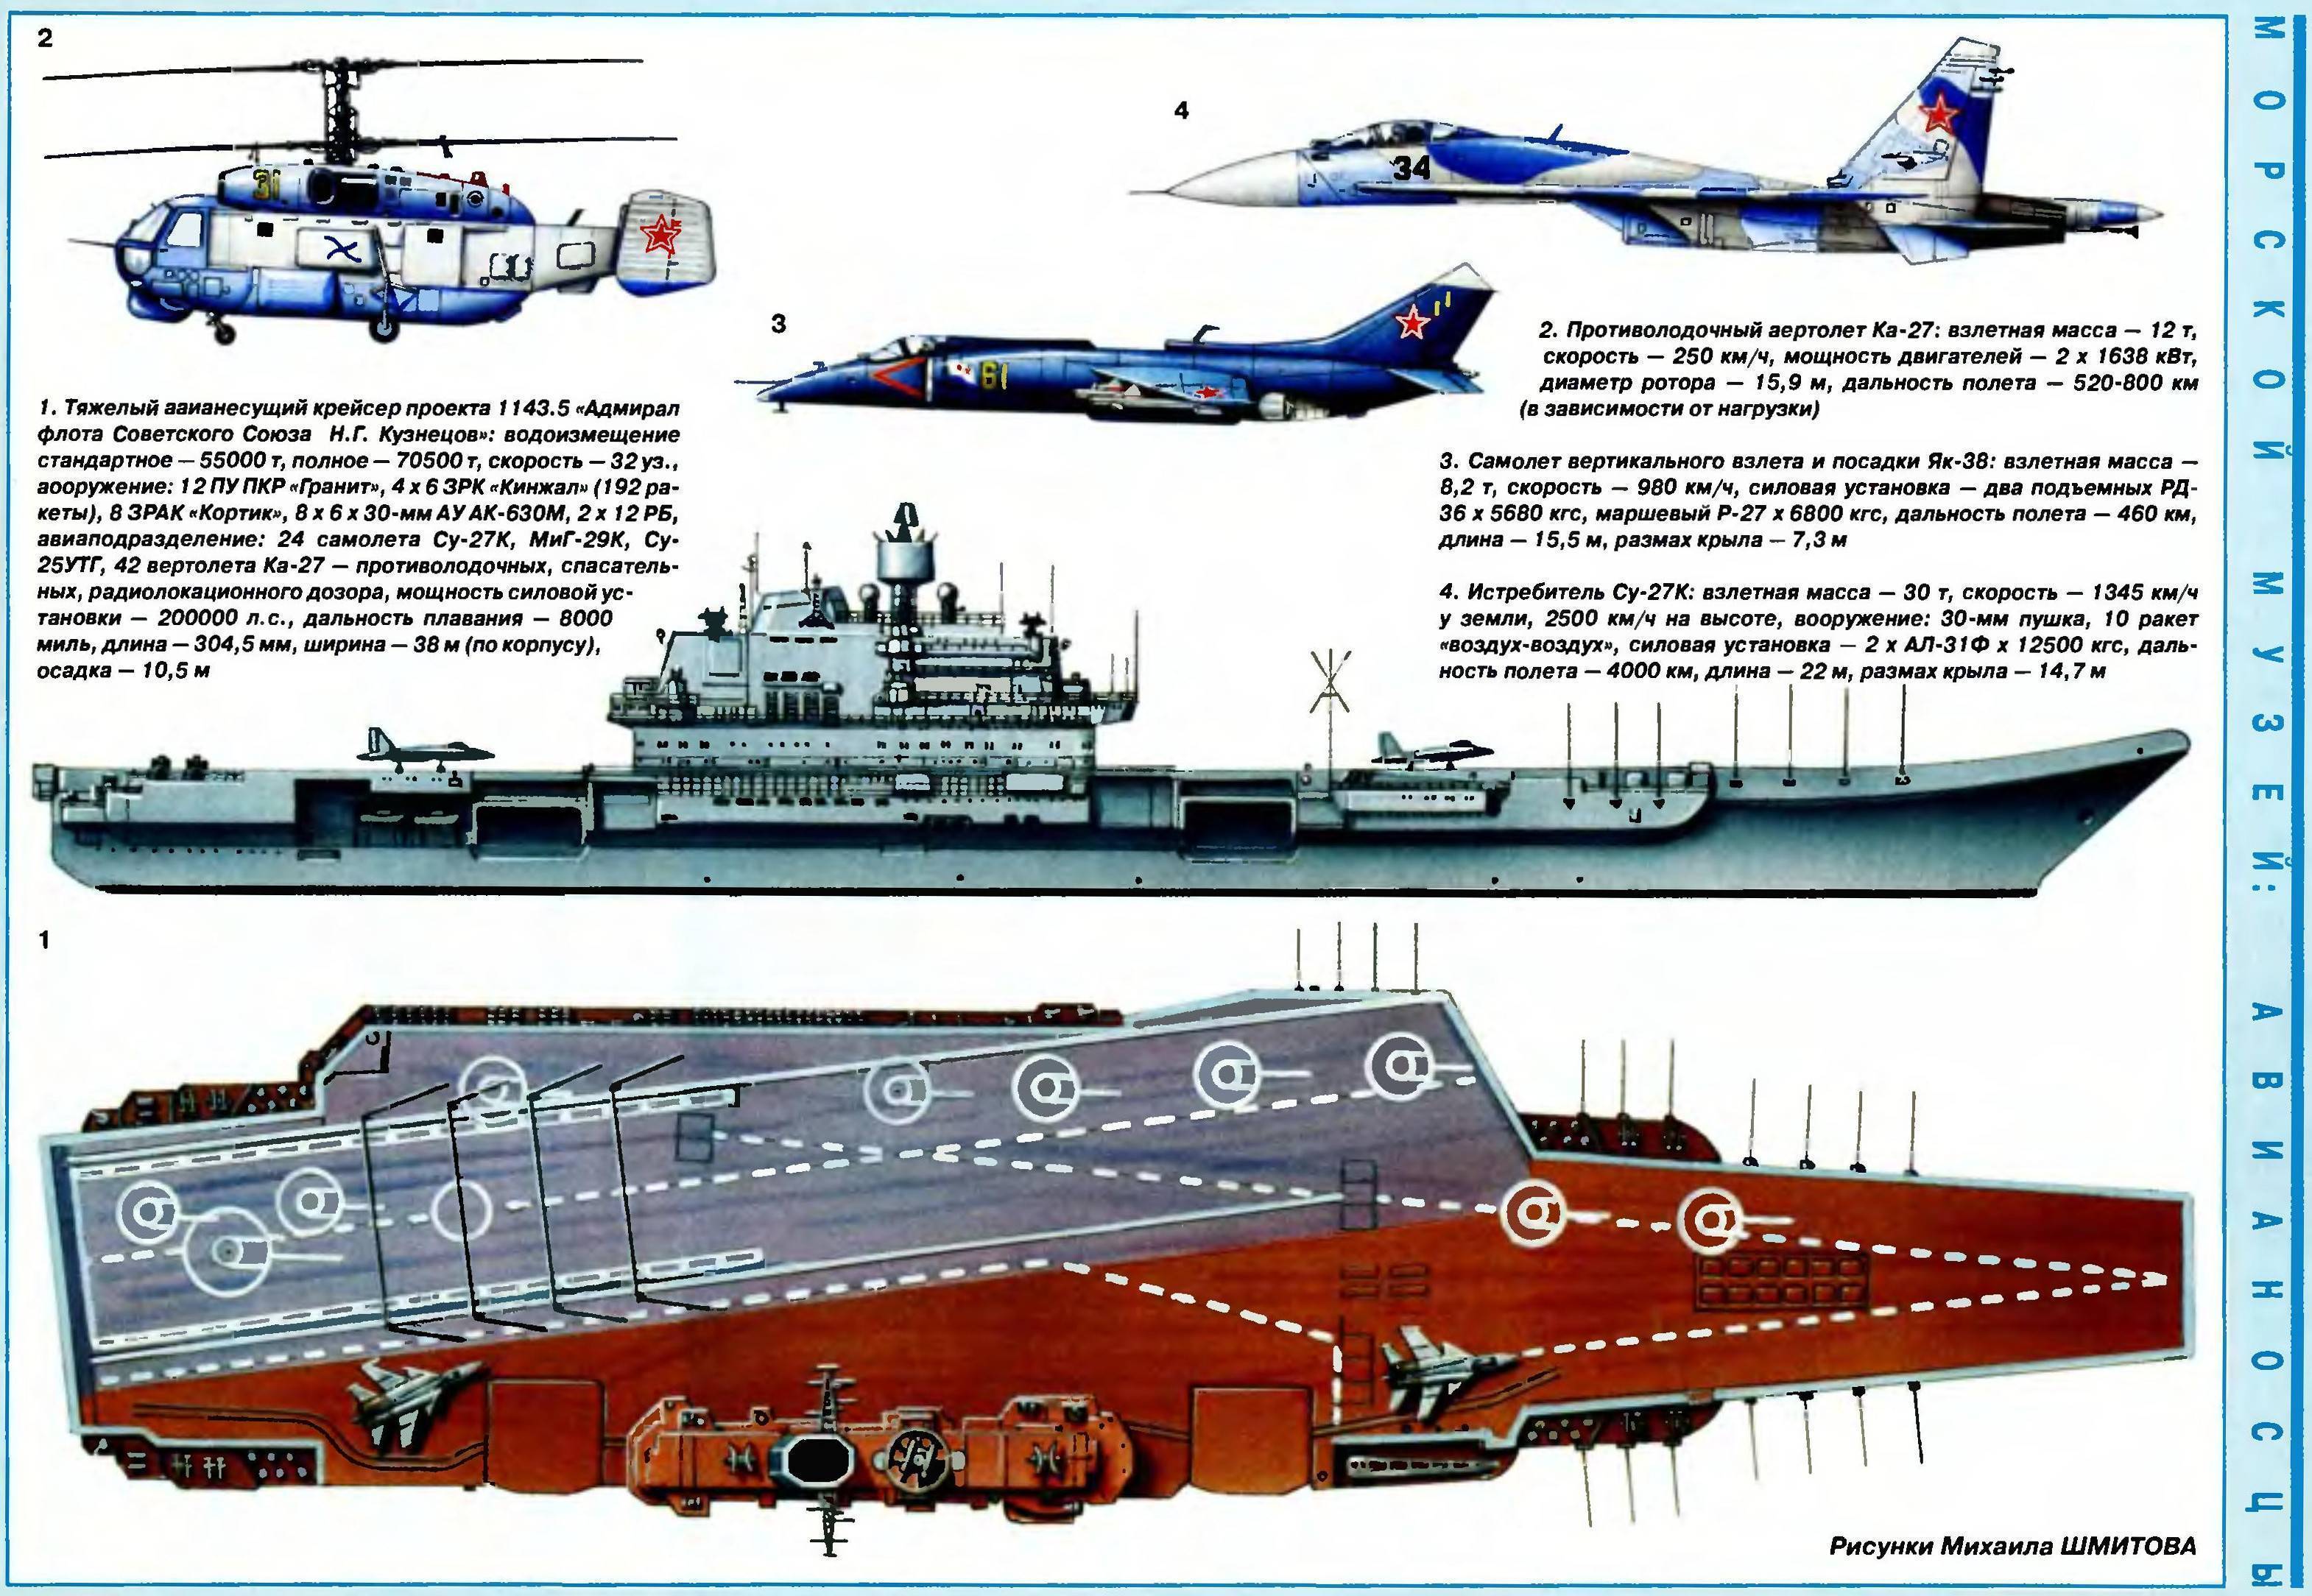 Крейсер адмирал кузнецов - тяжелый авианесущий корабль, характеристики